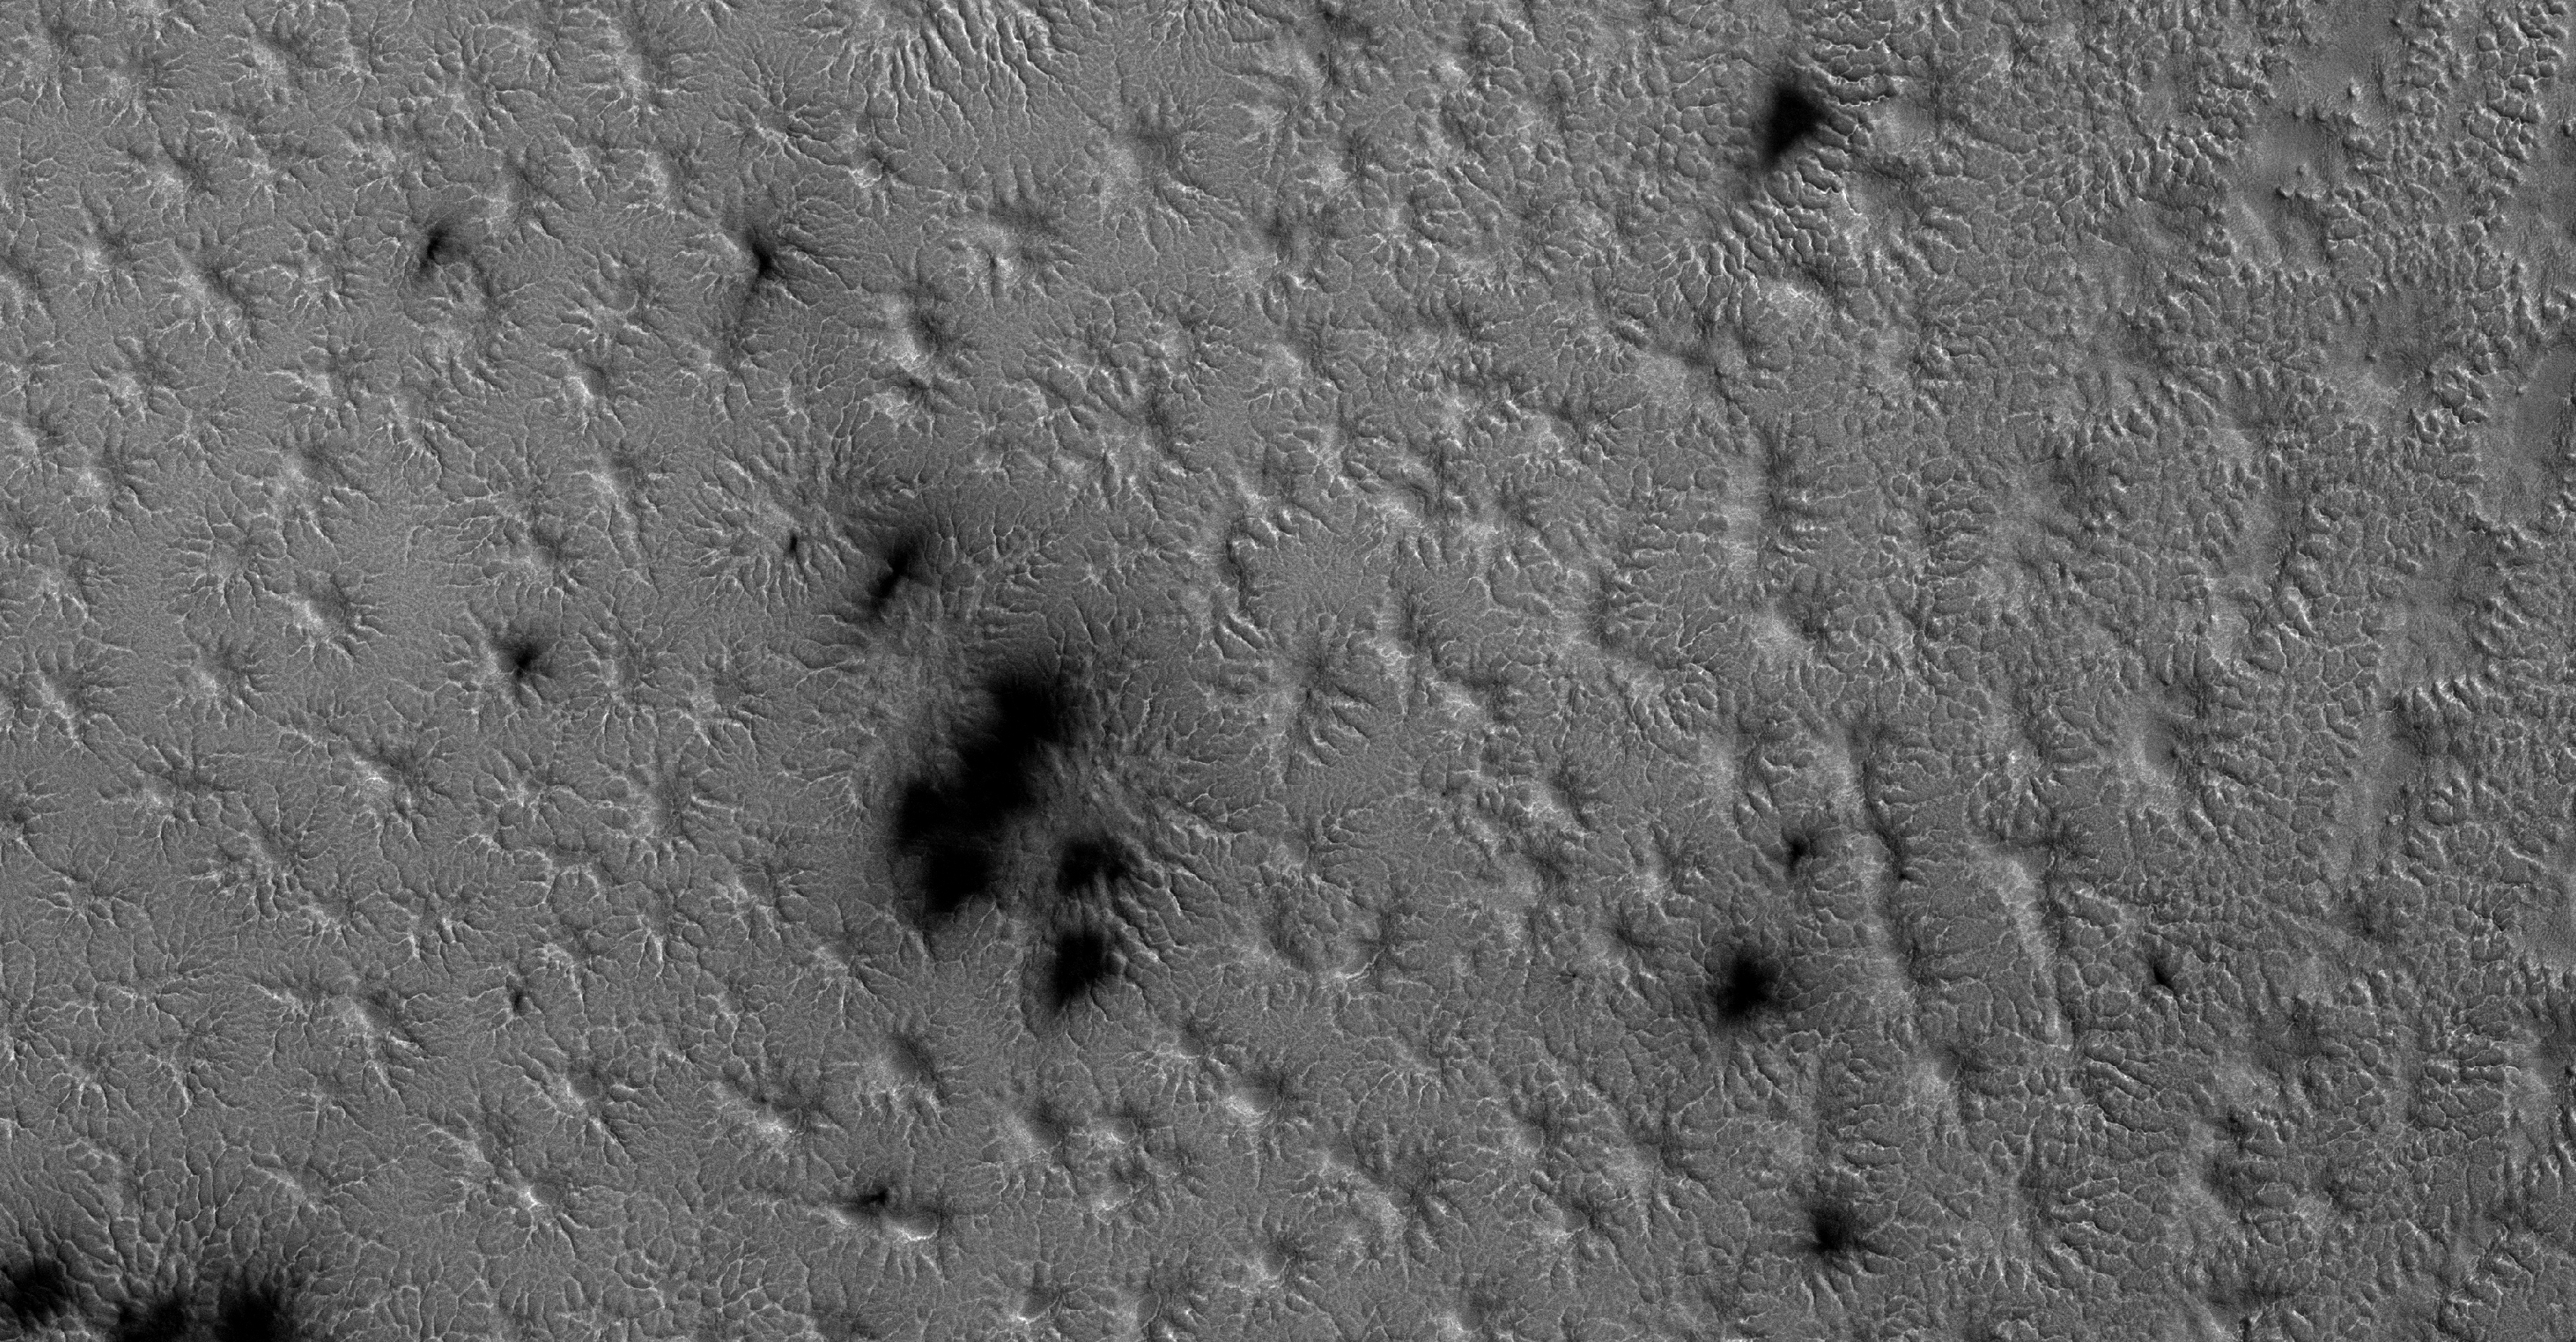 Spider Migration on Mars – NASA Mars Exploration